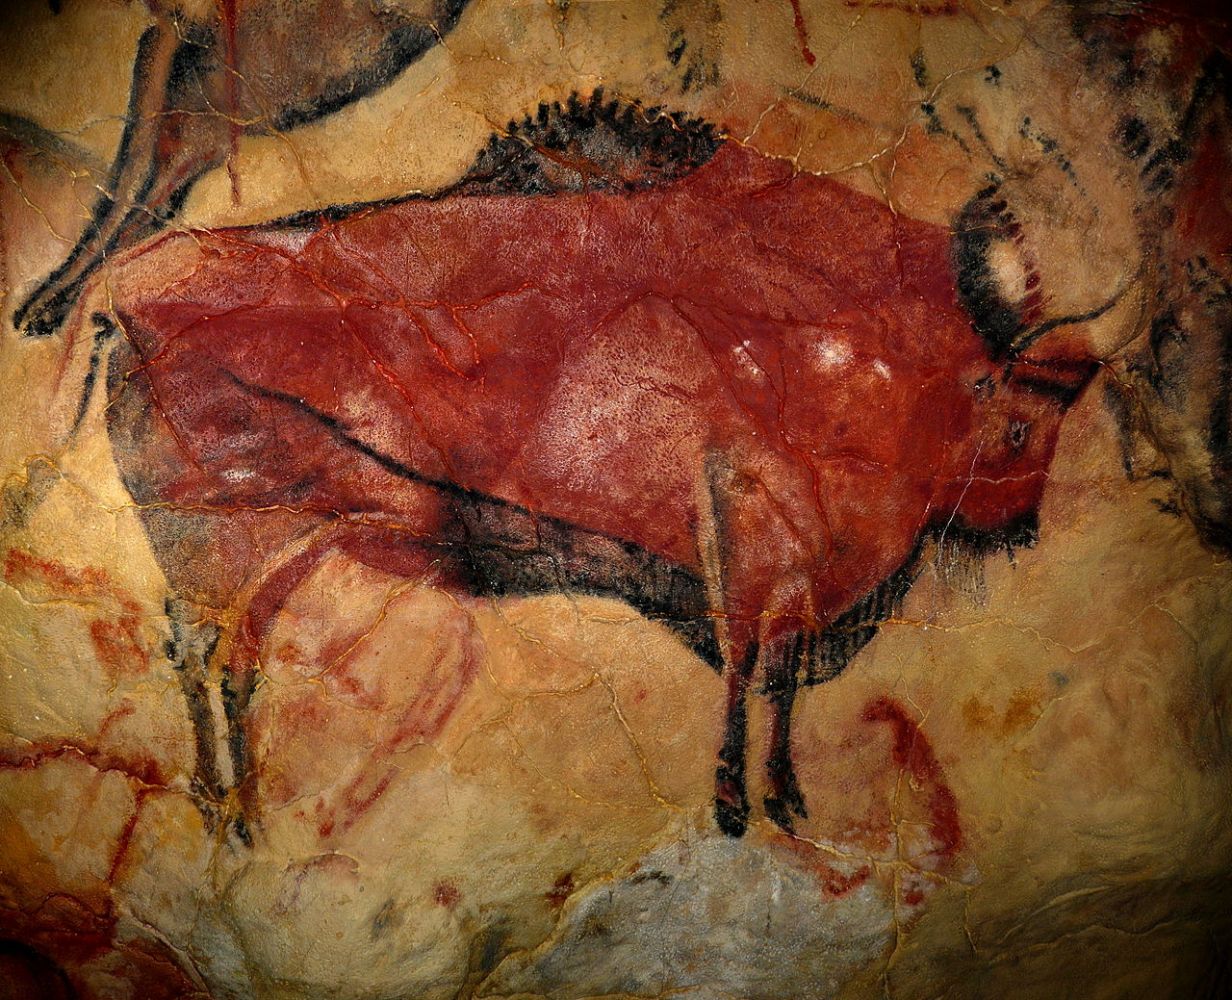 Abb. 4: Höhlenmalerei eines Bisons aus Altamira